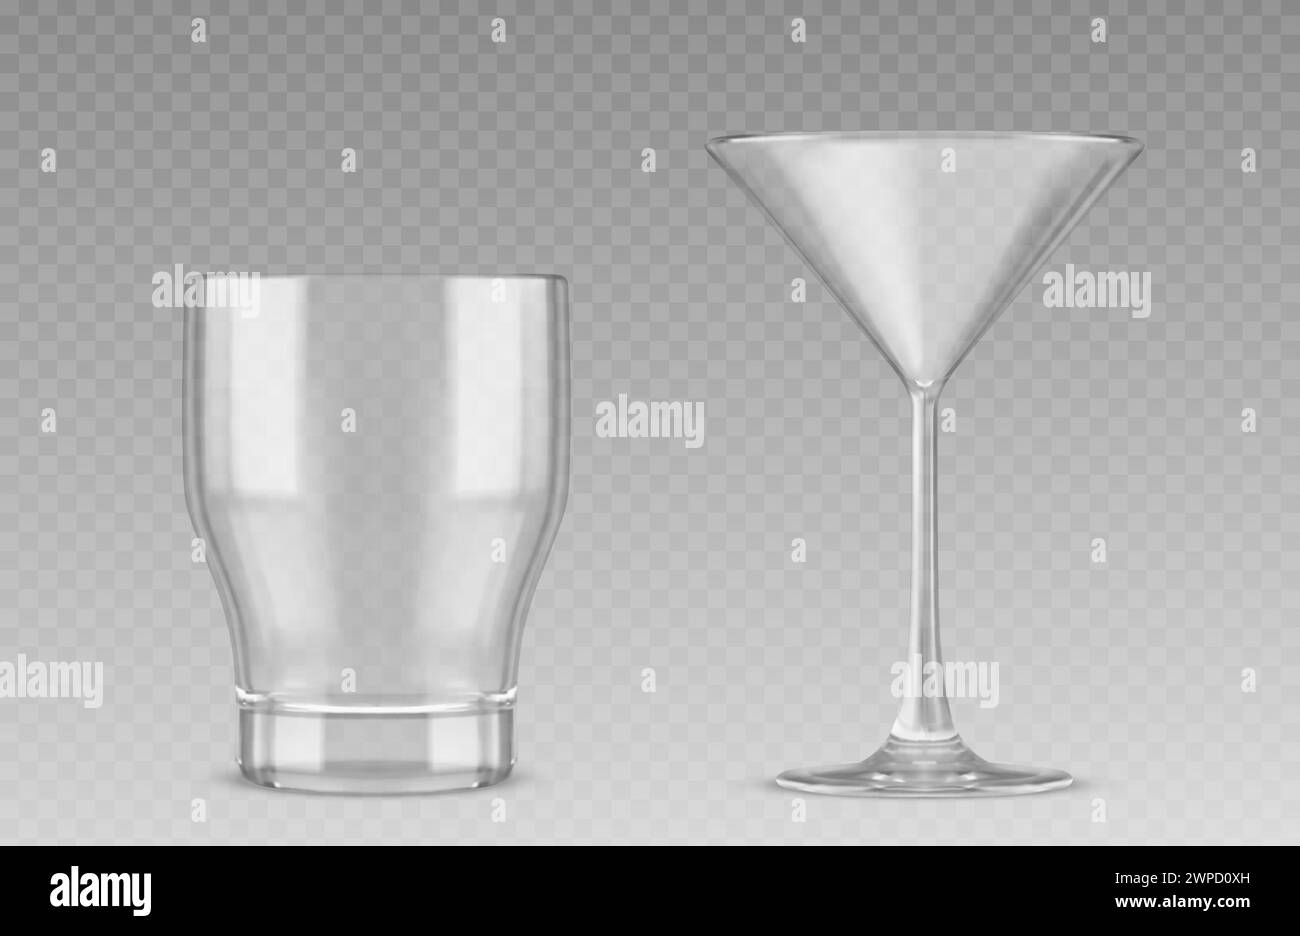 ensemble de verre à cocktail 3d isolé sur fond transparent. Illustration réaliste vectorielle de la tasse propre vide pour l'alcool, le jus, l'eau, la réflexion de la lumière sur la surface de la verrerie claire, les éléments de conception de partie Illustration de Vecteur